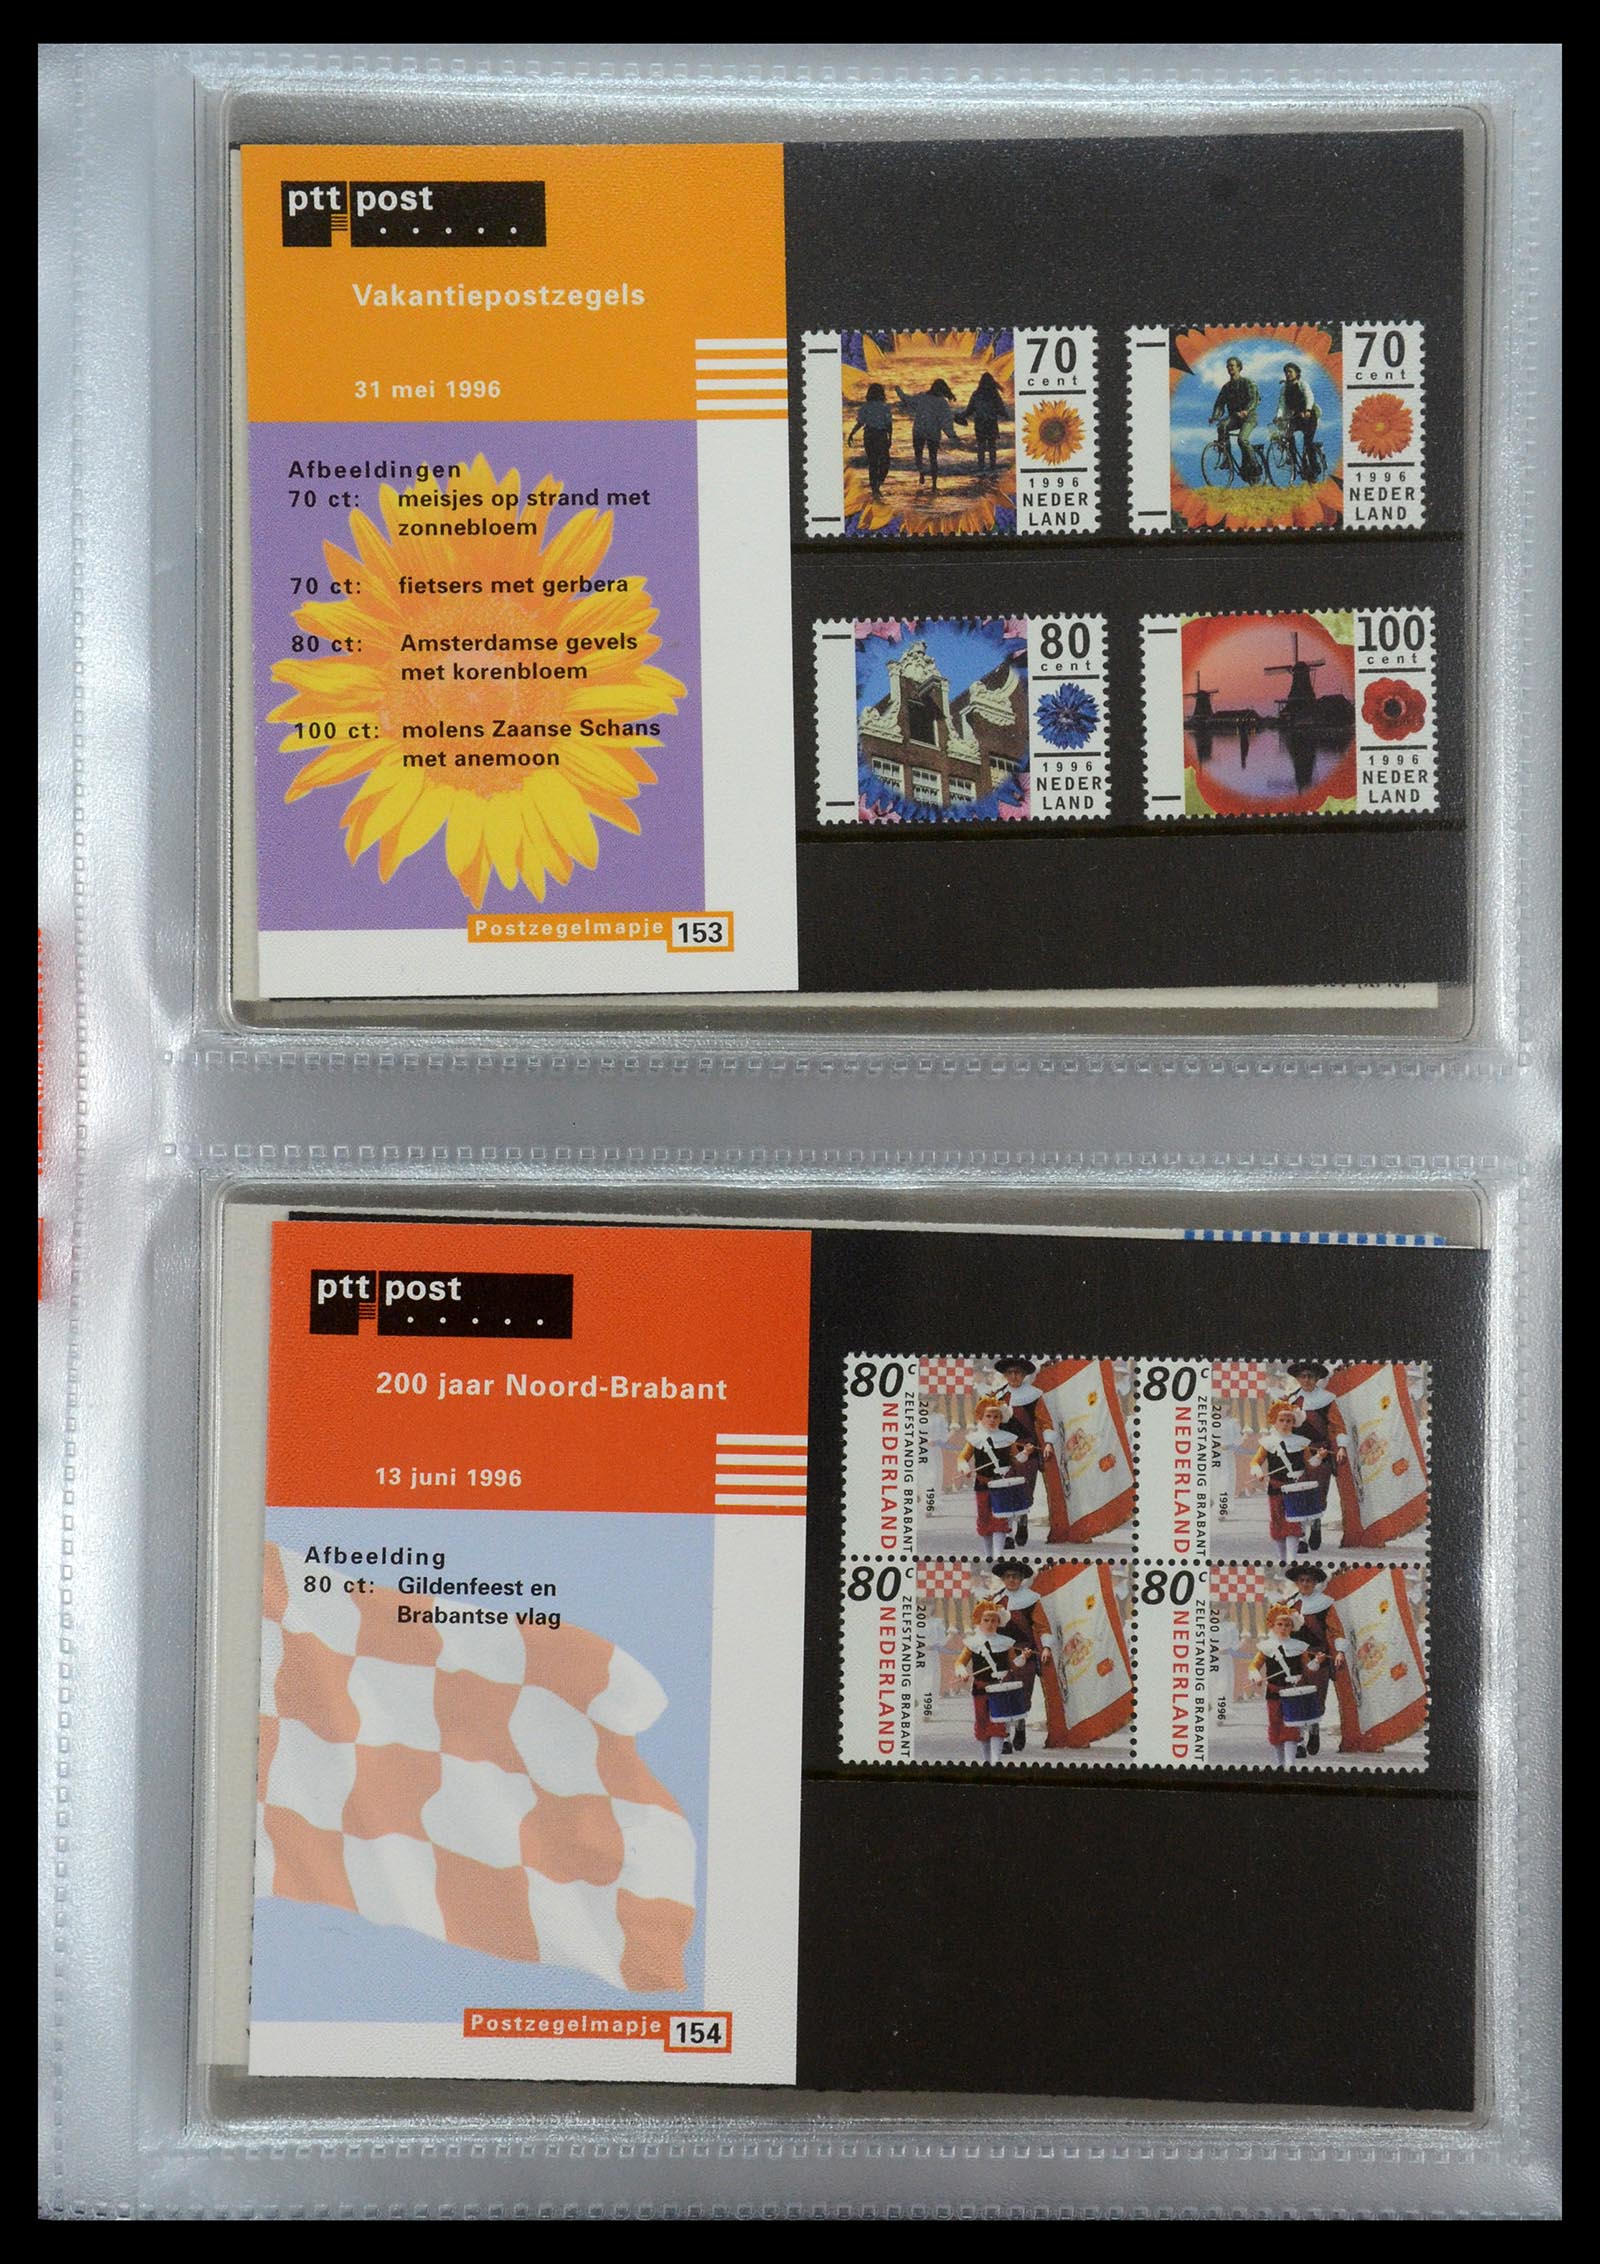 35144 079 - Stamp Collection 35144 Netherlands PTT presentation packs 1982-2021!